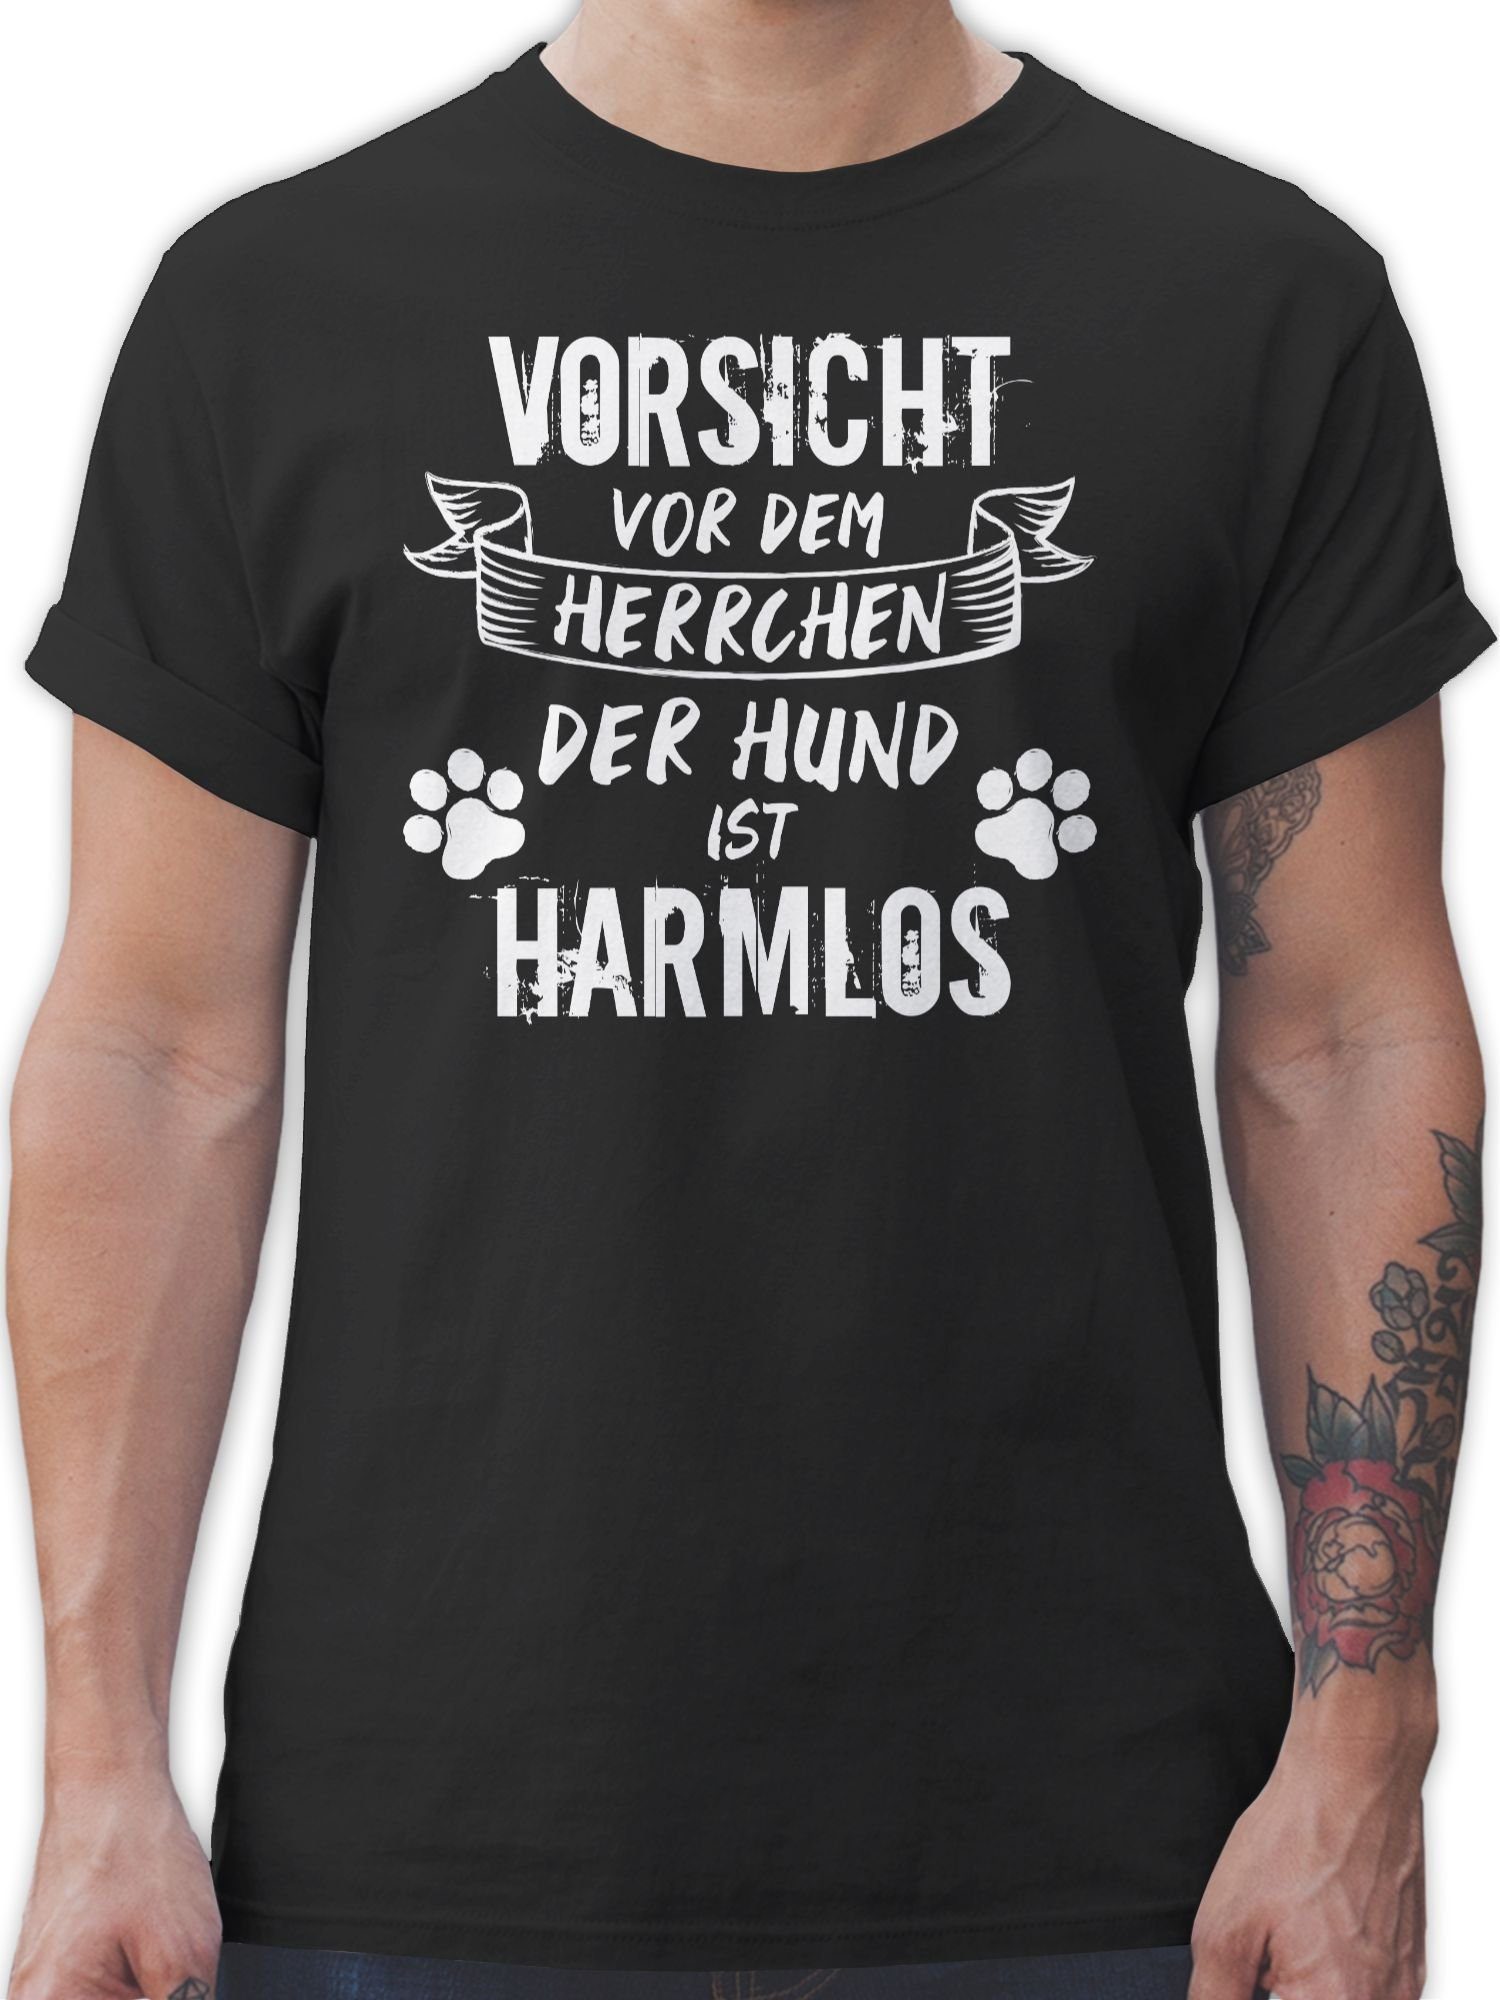 für vor - Vorsicht Hund Hundebesitzer Grunge/Vintage Geschenk 01 Shirtracer dem - T-Shirt der Schwarz Weiß harmlos Herrchen ist